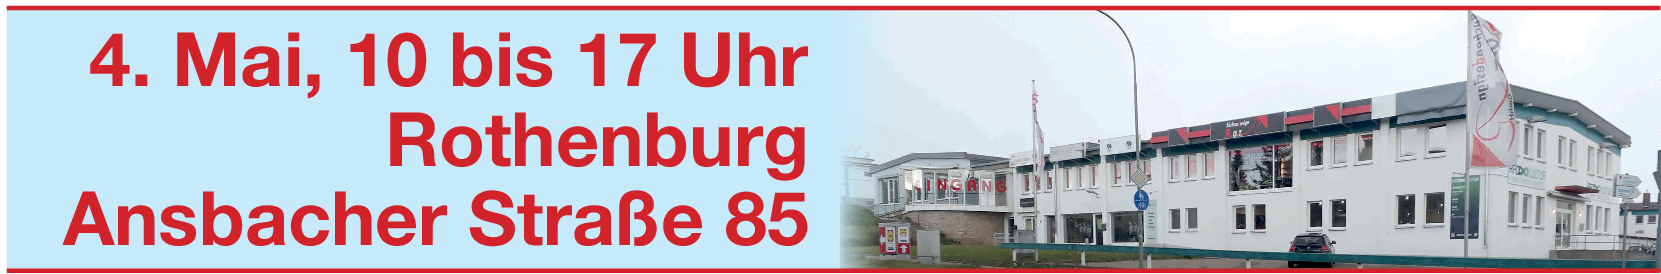 EMS-Lounge seit 2020 in Rothenburg